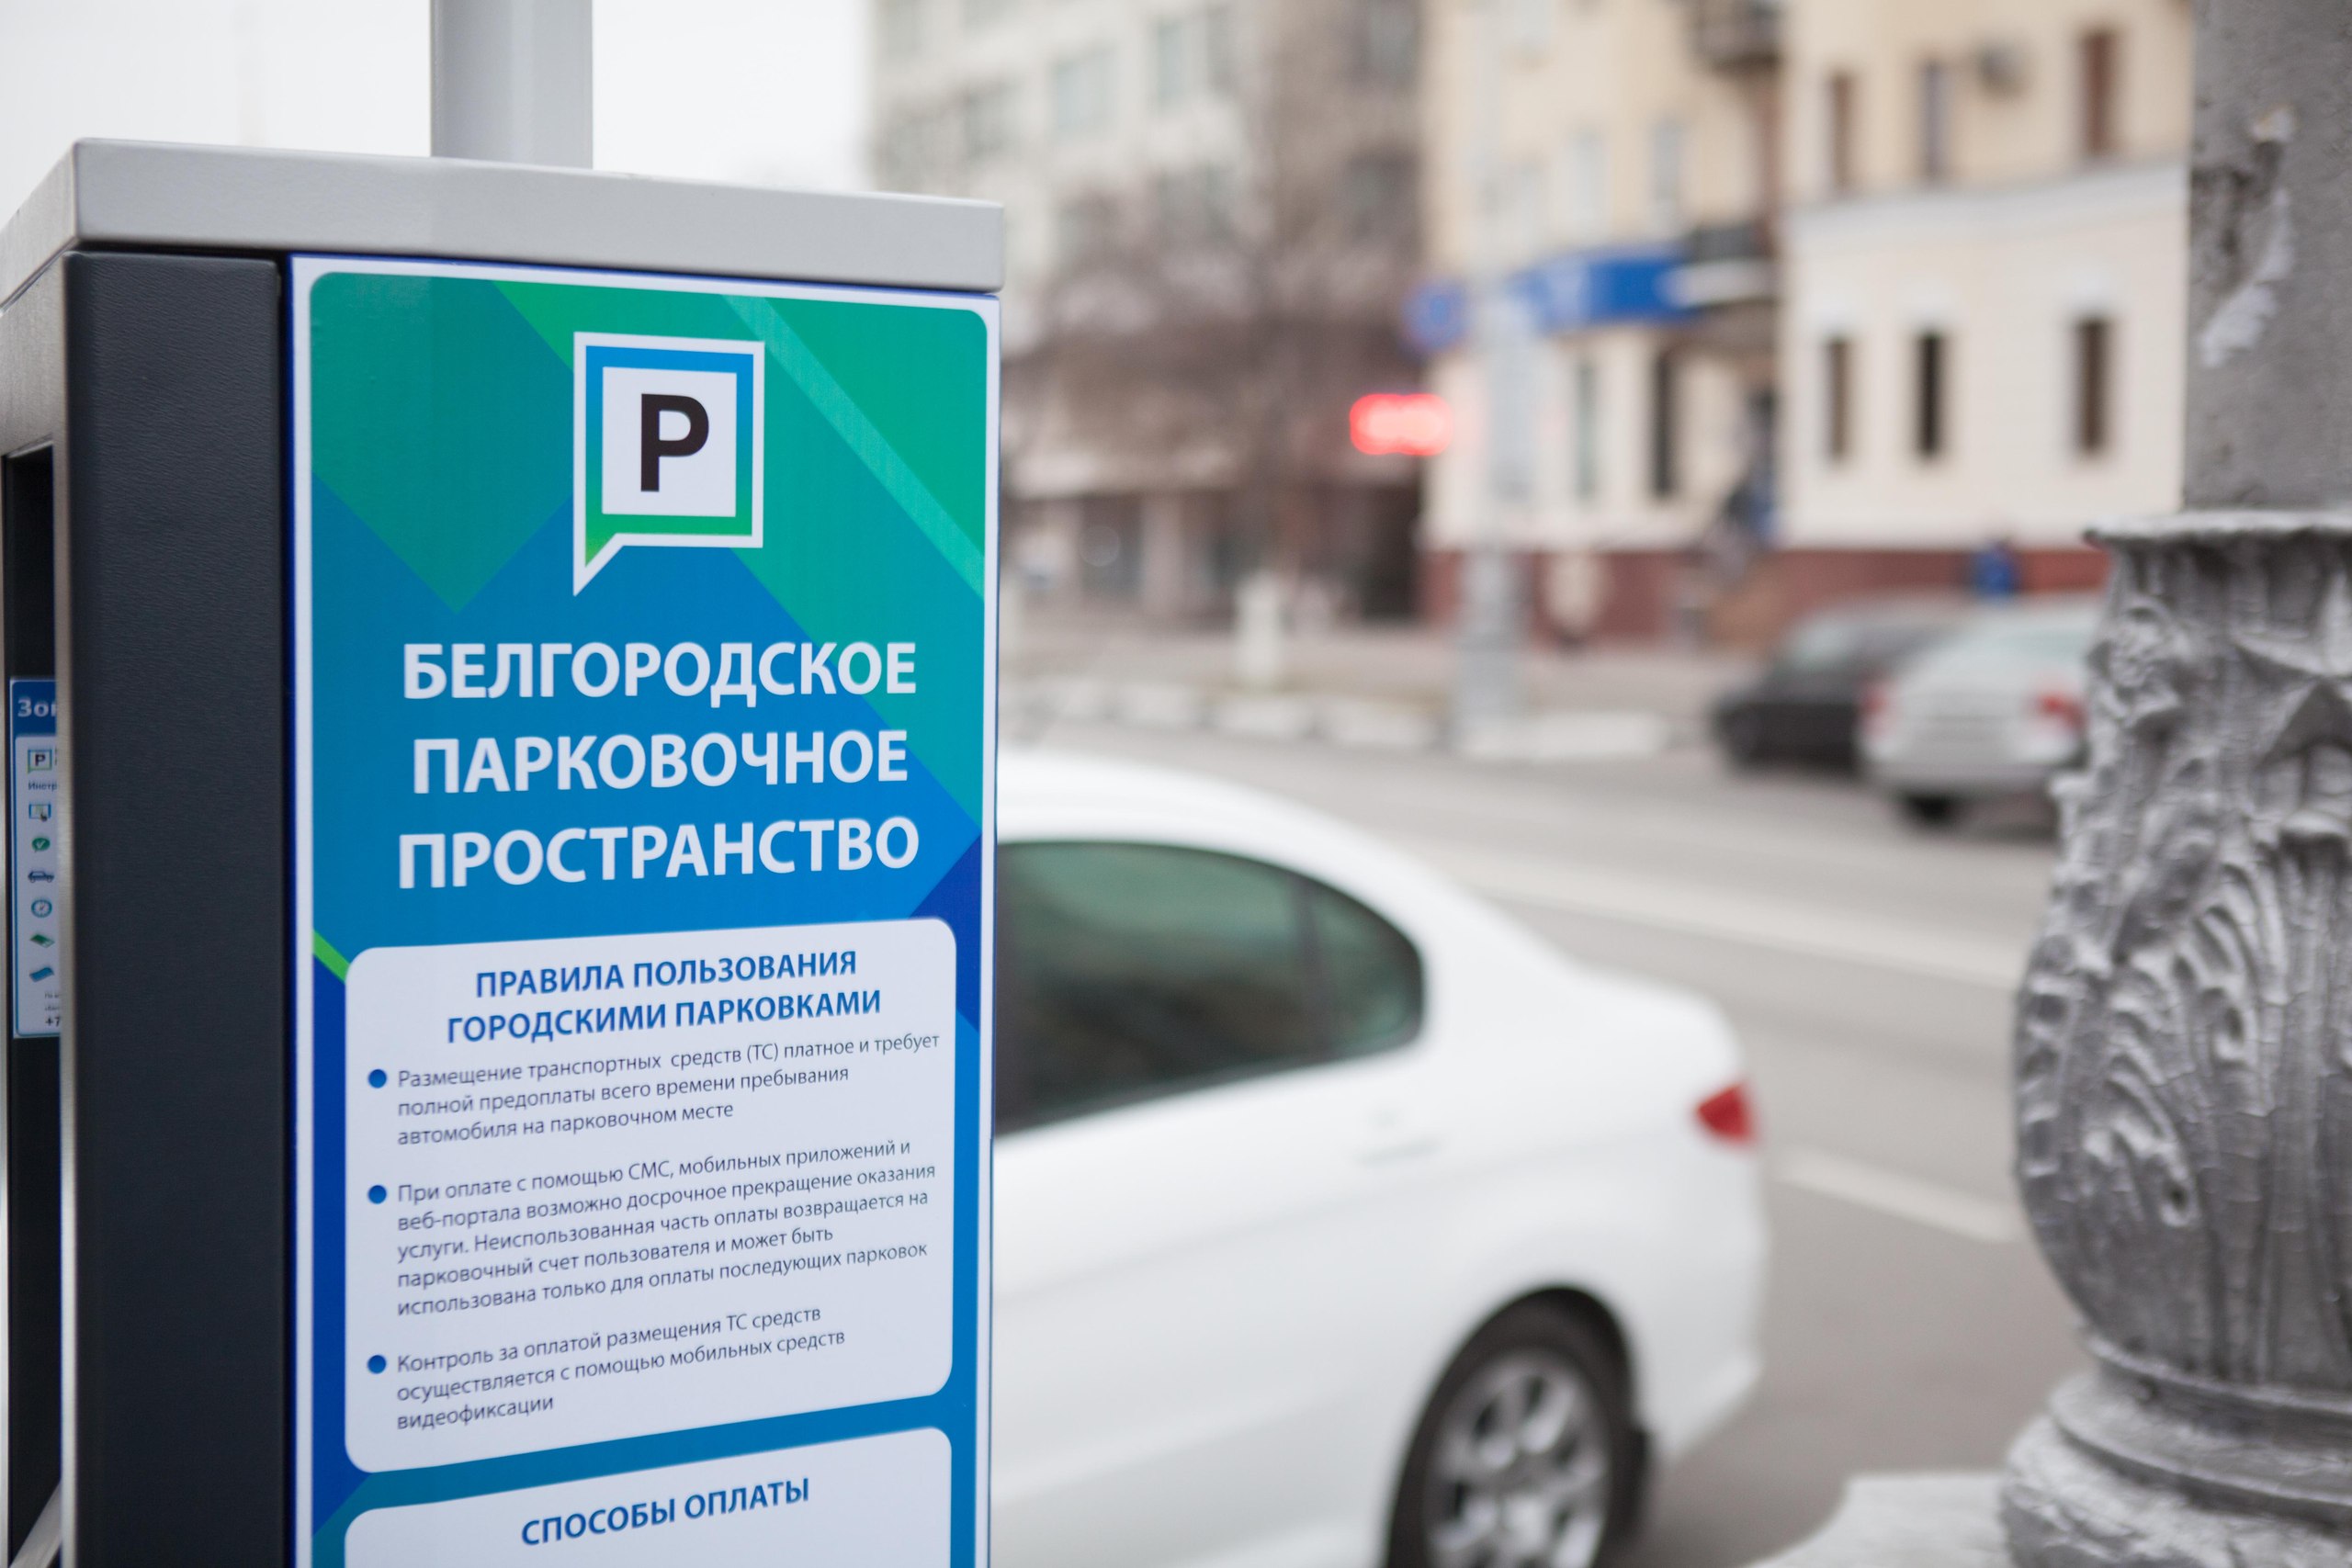 Наземные переходы, велодорожки и парк без аттракционов. Как директор проектов КБ Стрелка предлагает изменить Белгород?